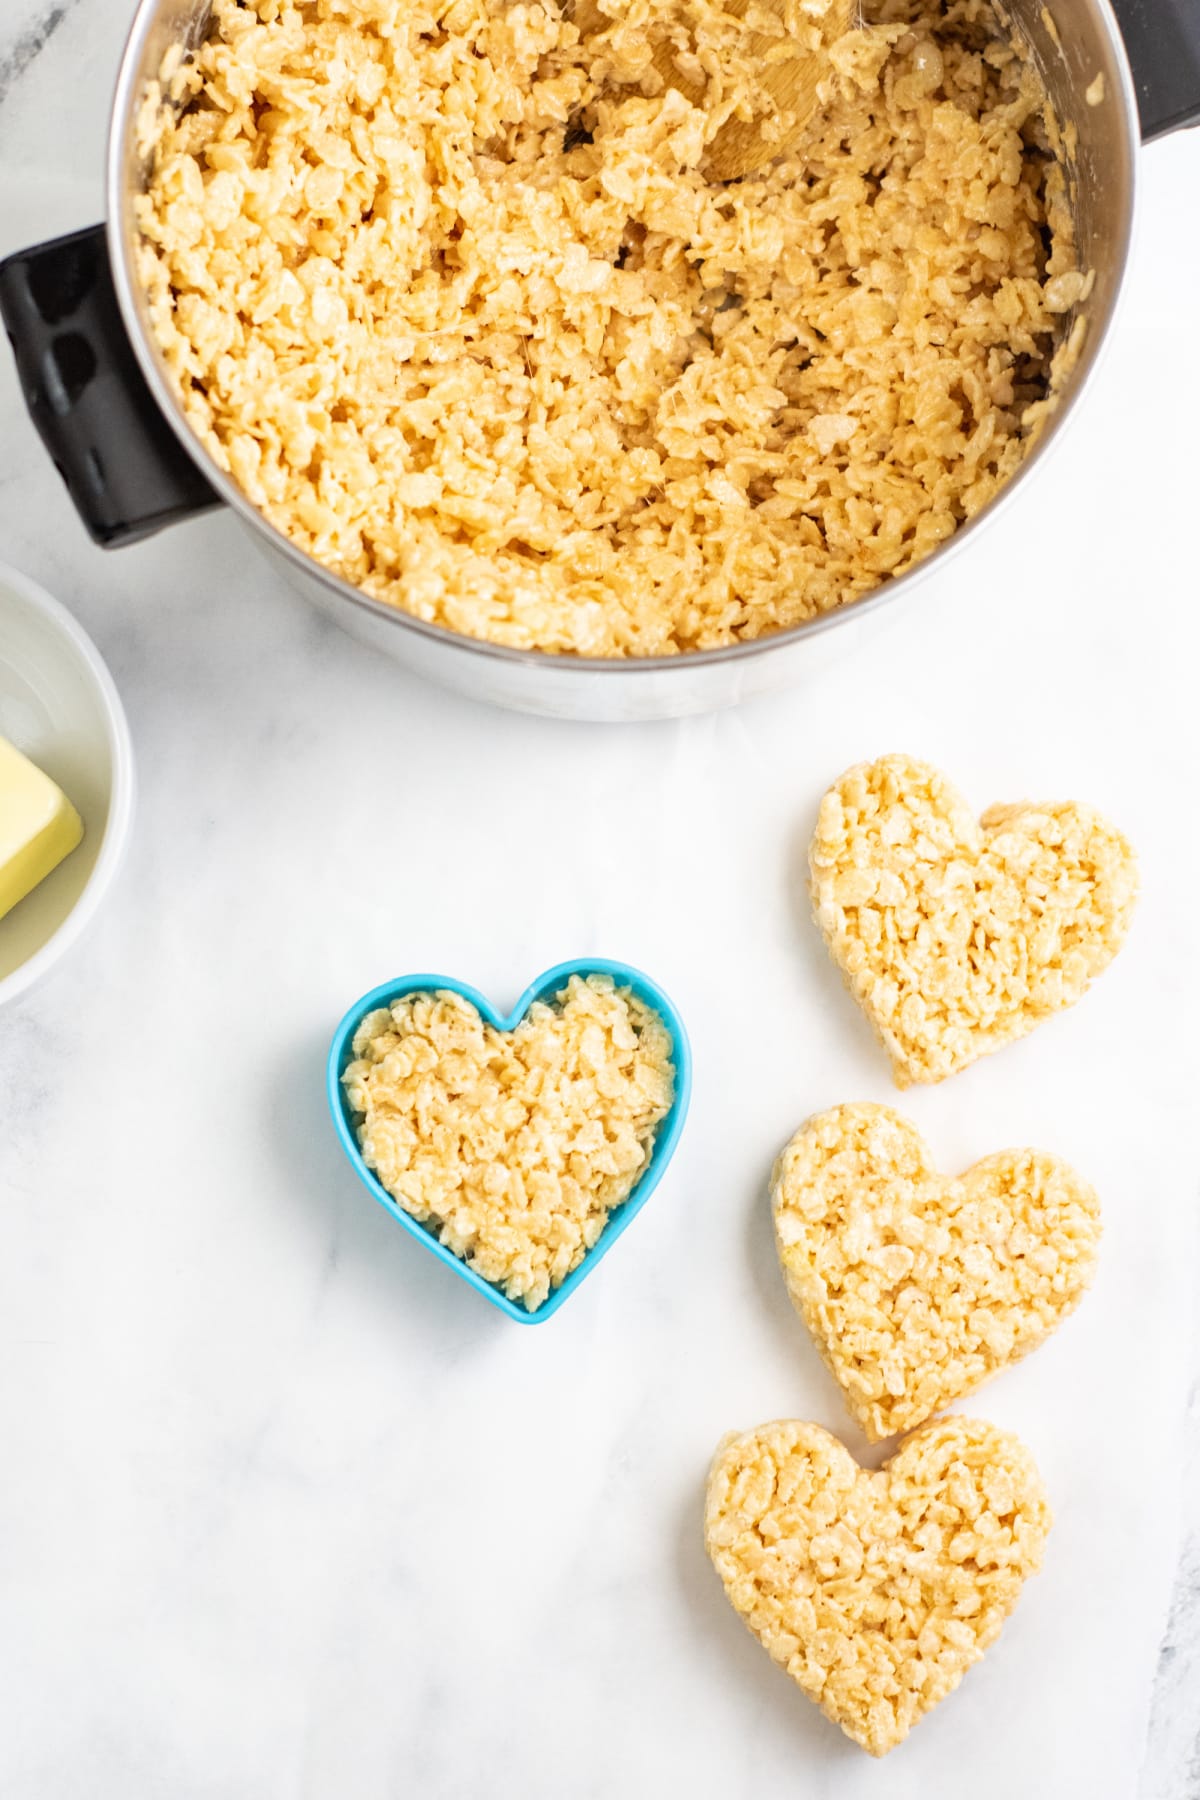 Heart shaped rice krispie treats